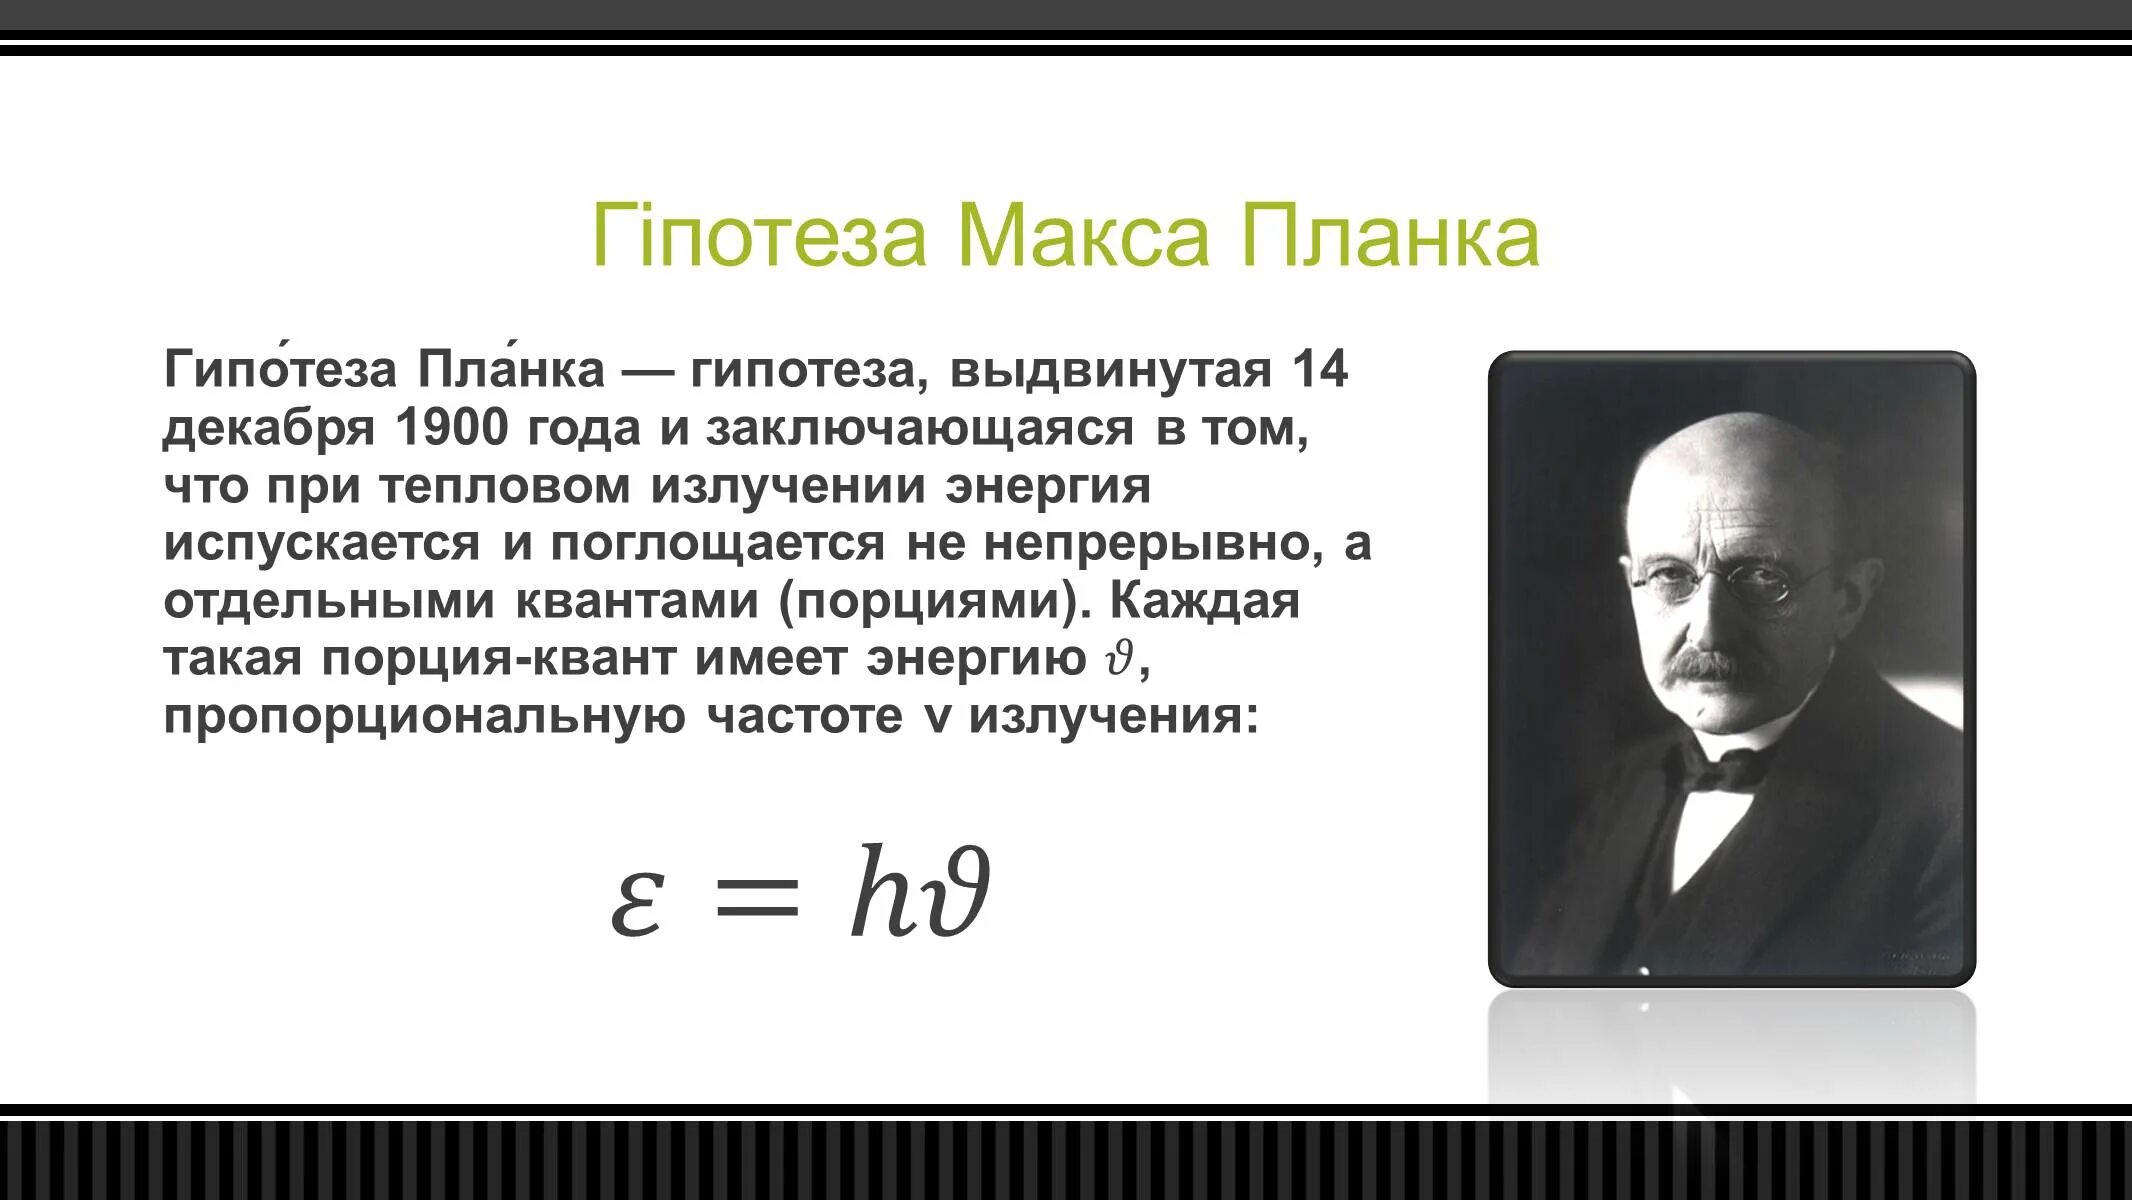 Макс Планк квантовая гипотеза. Макс Планк основатель квантовой теории. Макс Планк открытие Кванта. Макс Планк квантовая гипотеза научная деятельность.